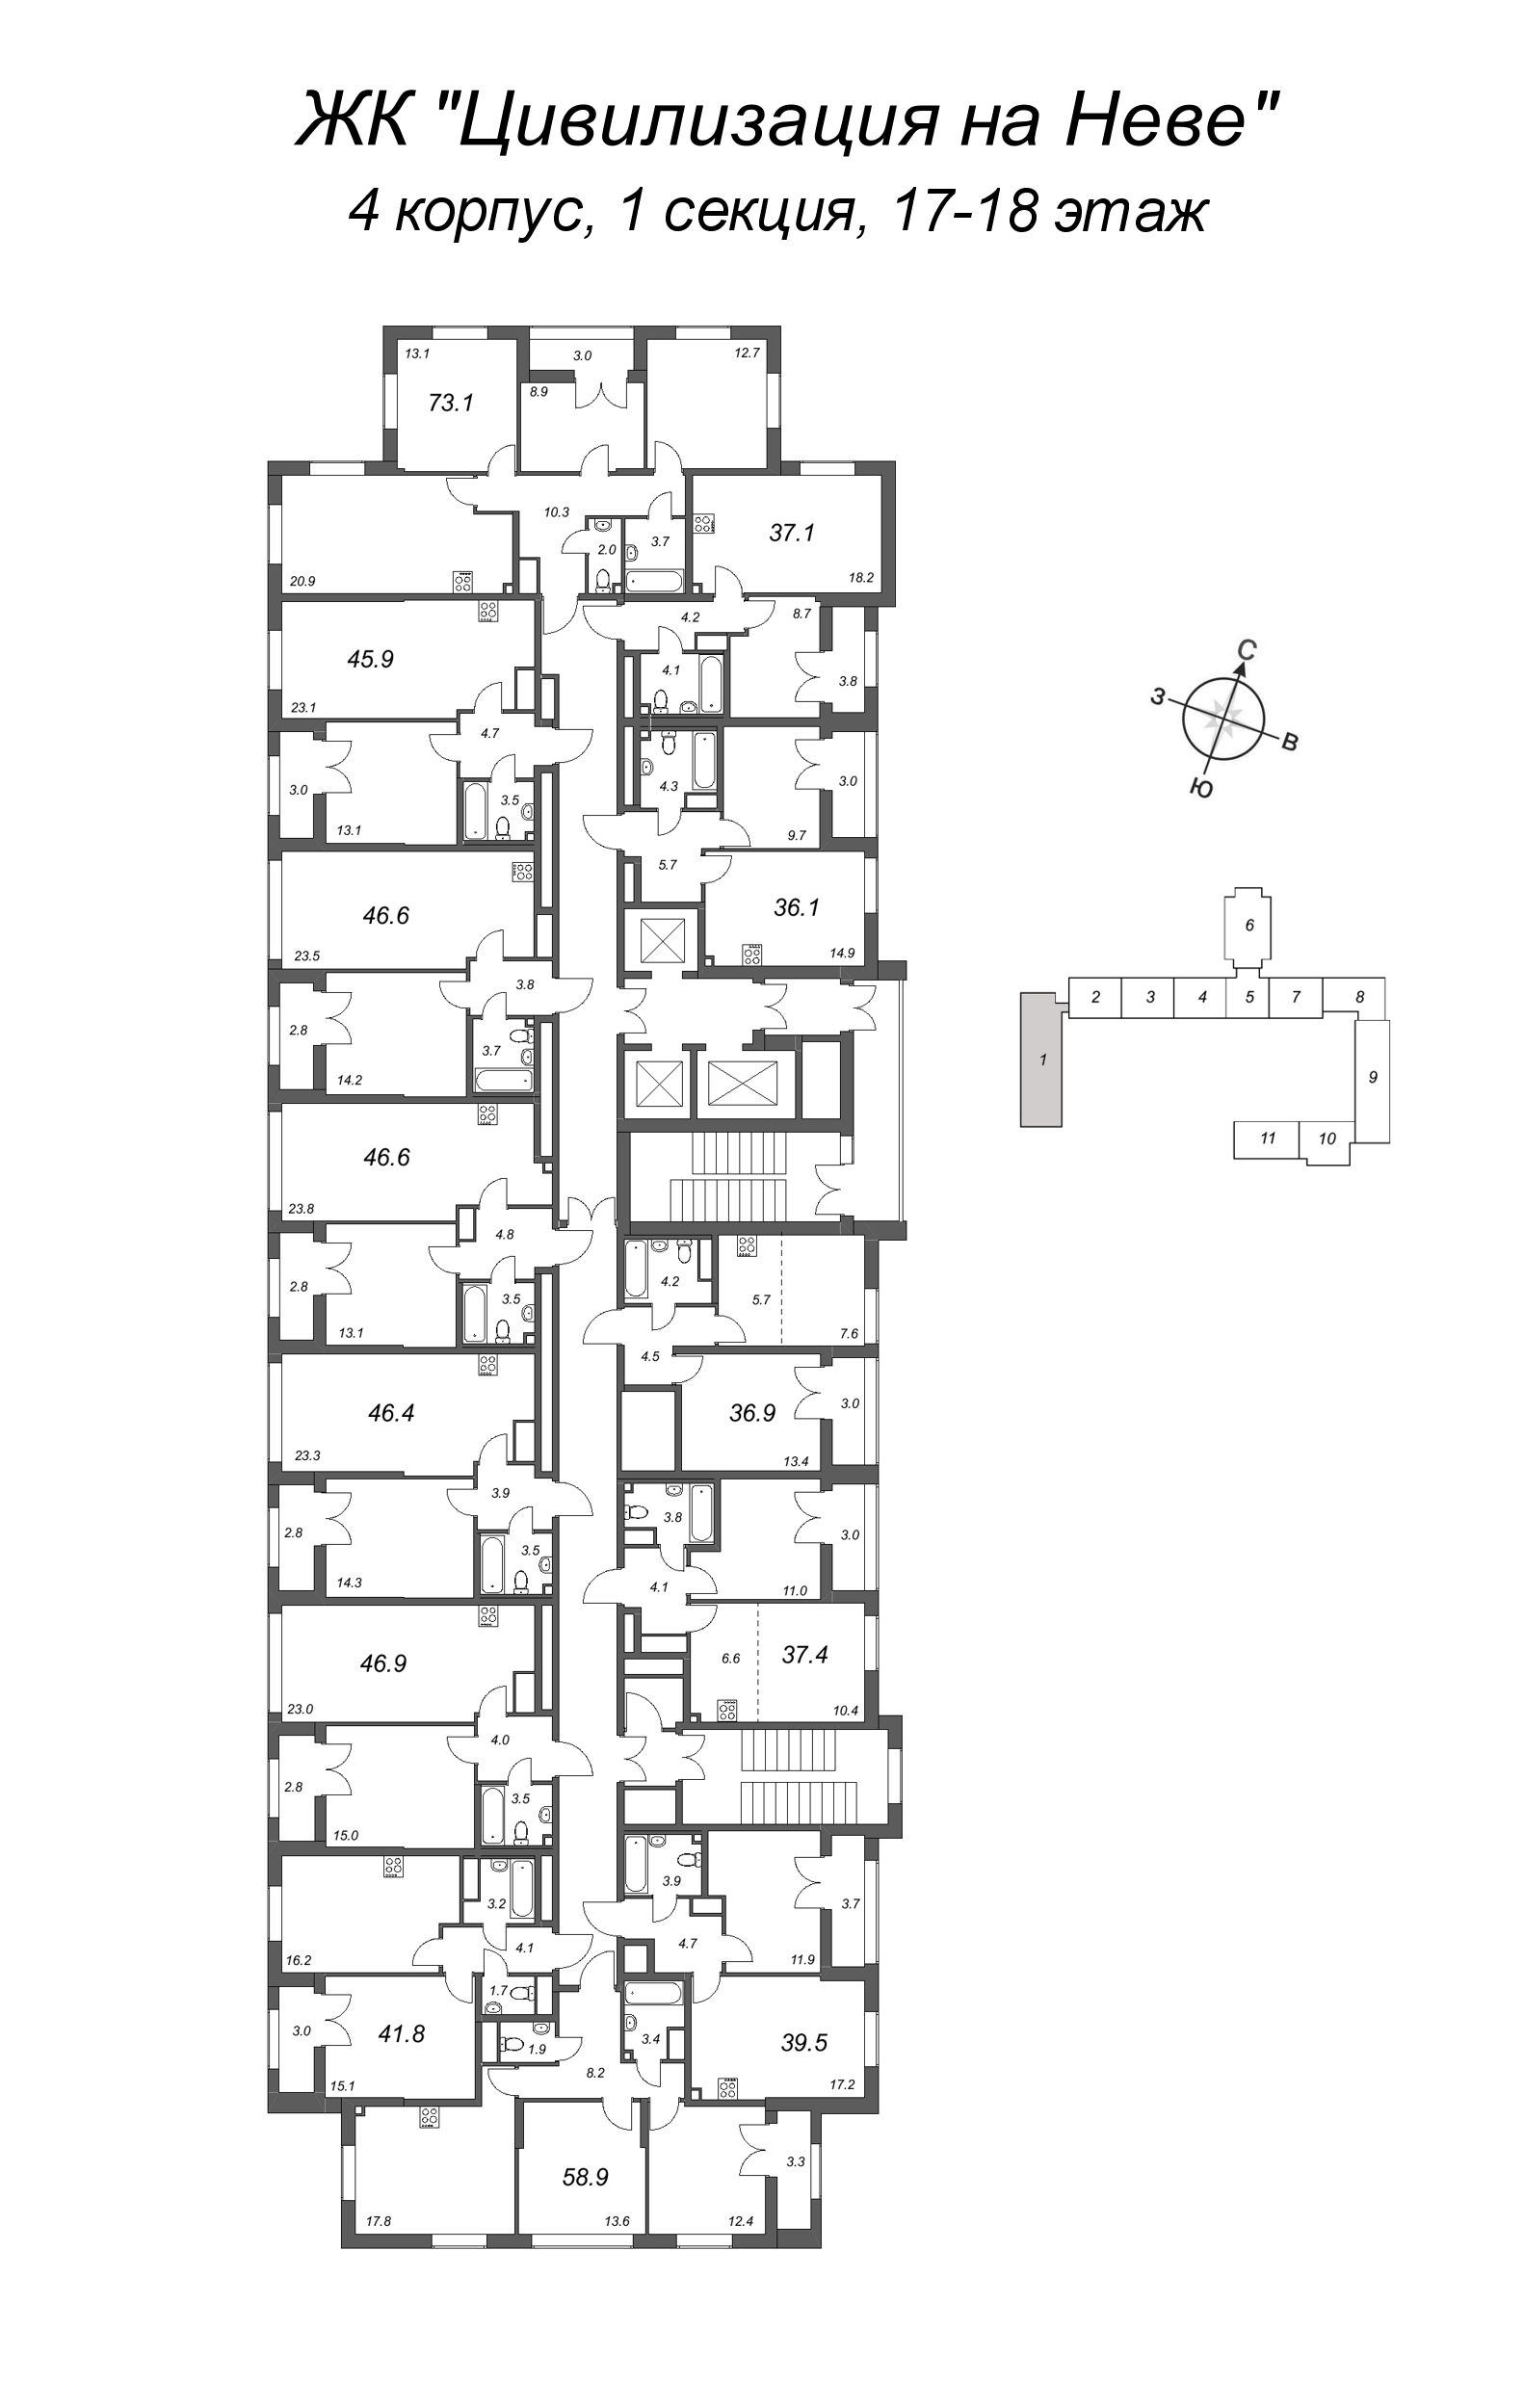 1-комнатная квартира, 36.9 м² в ЖК "Цивилизация на Неве" - планировка этажа